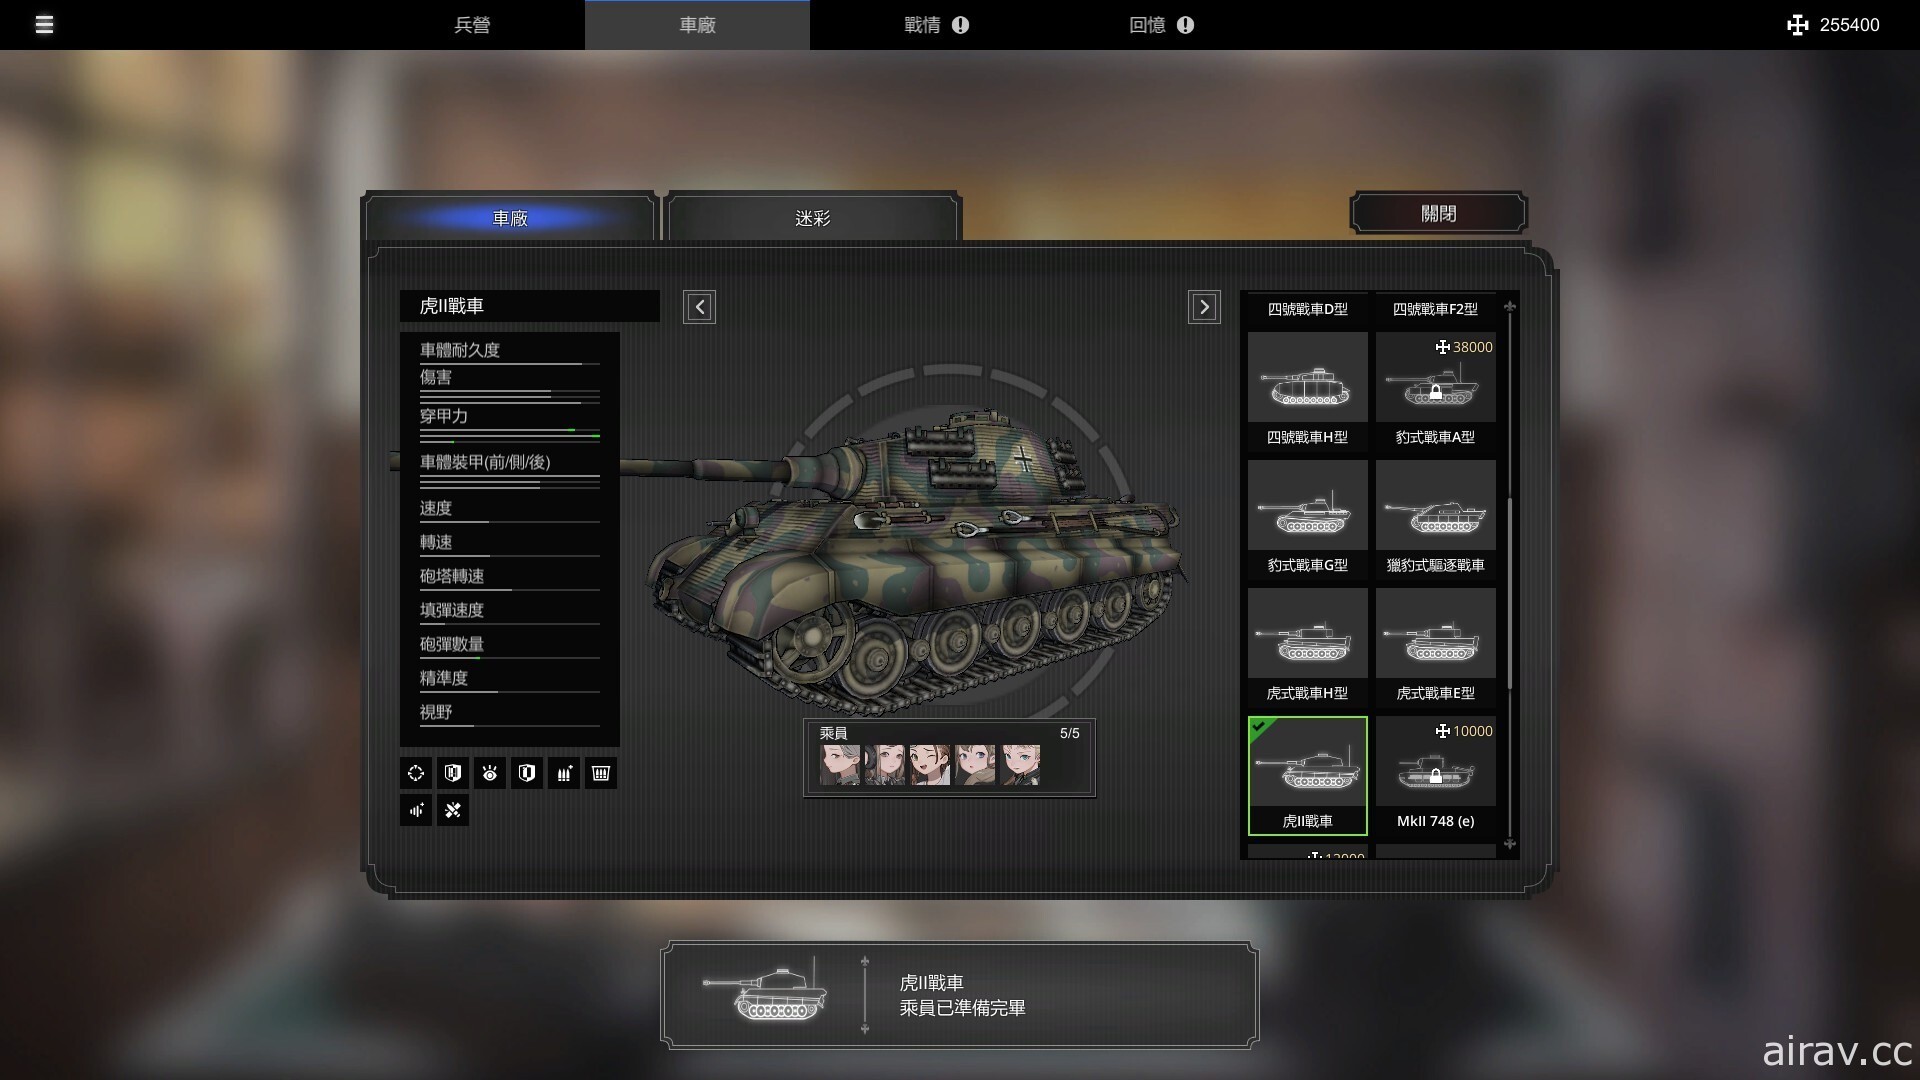 《Panzer Knights》1.0 正式版已推出 開放四個主要任務關卡